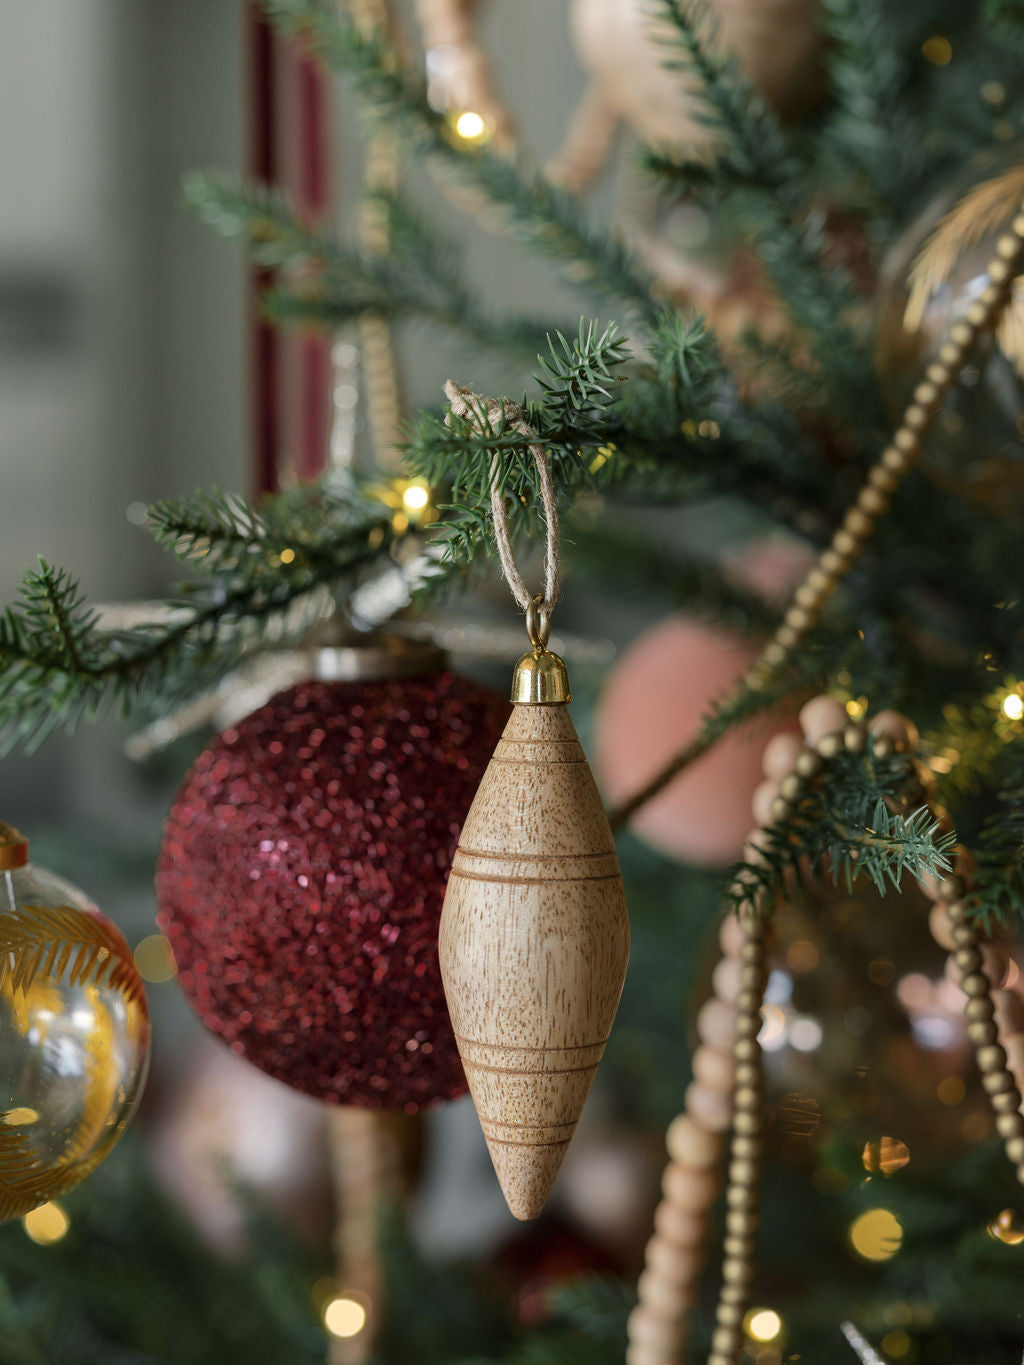 Set of 27 DIY Wood Ornaments